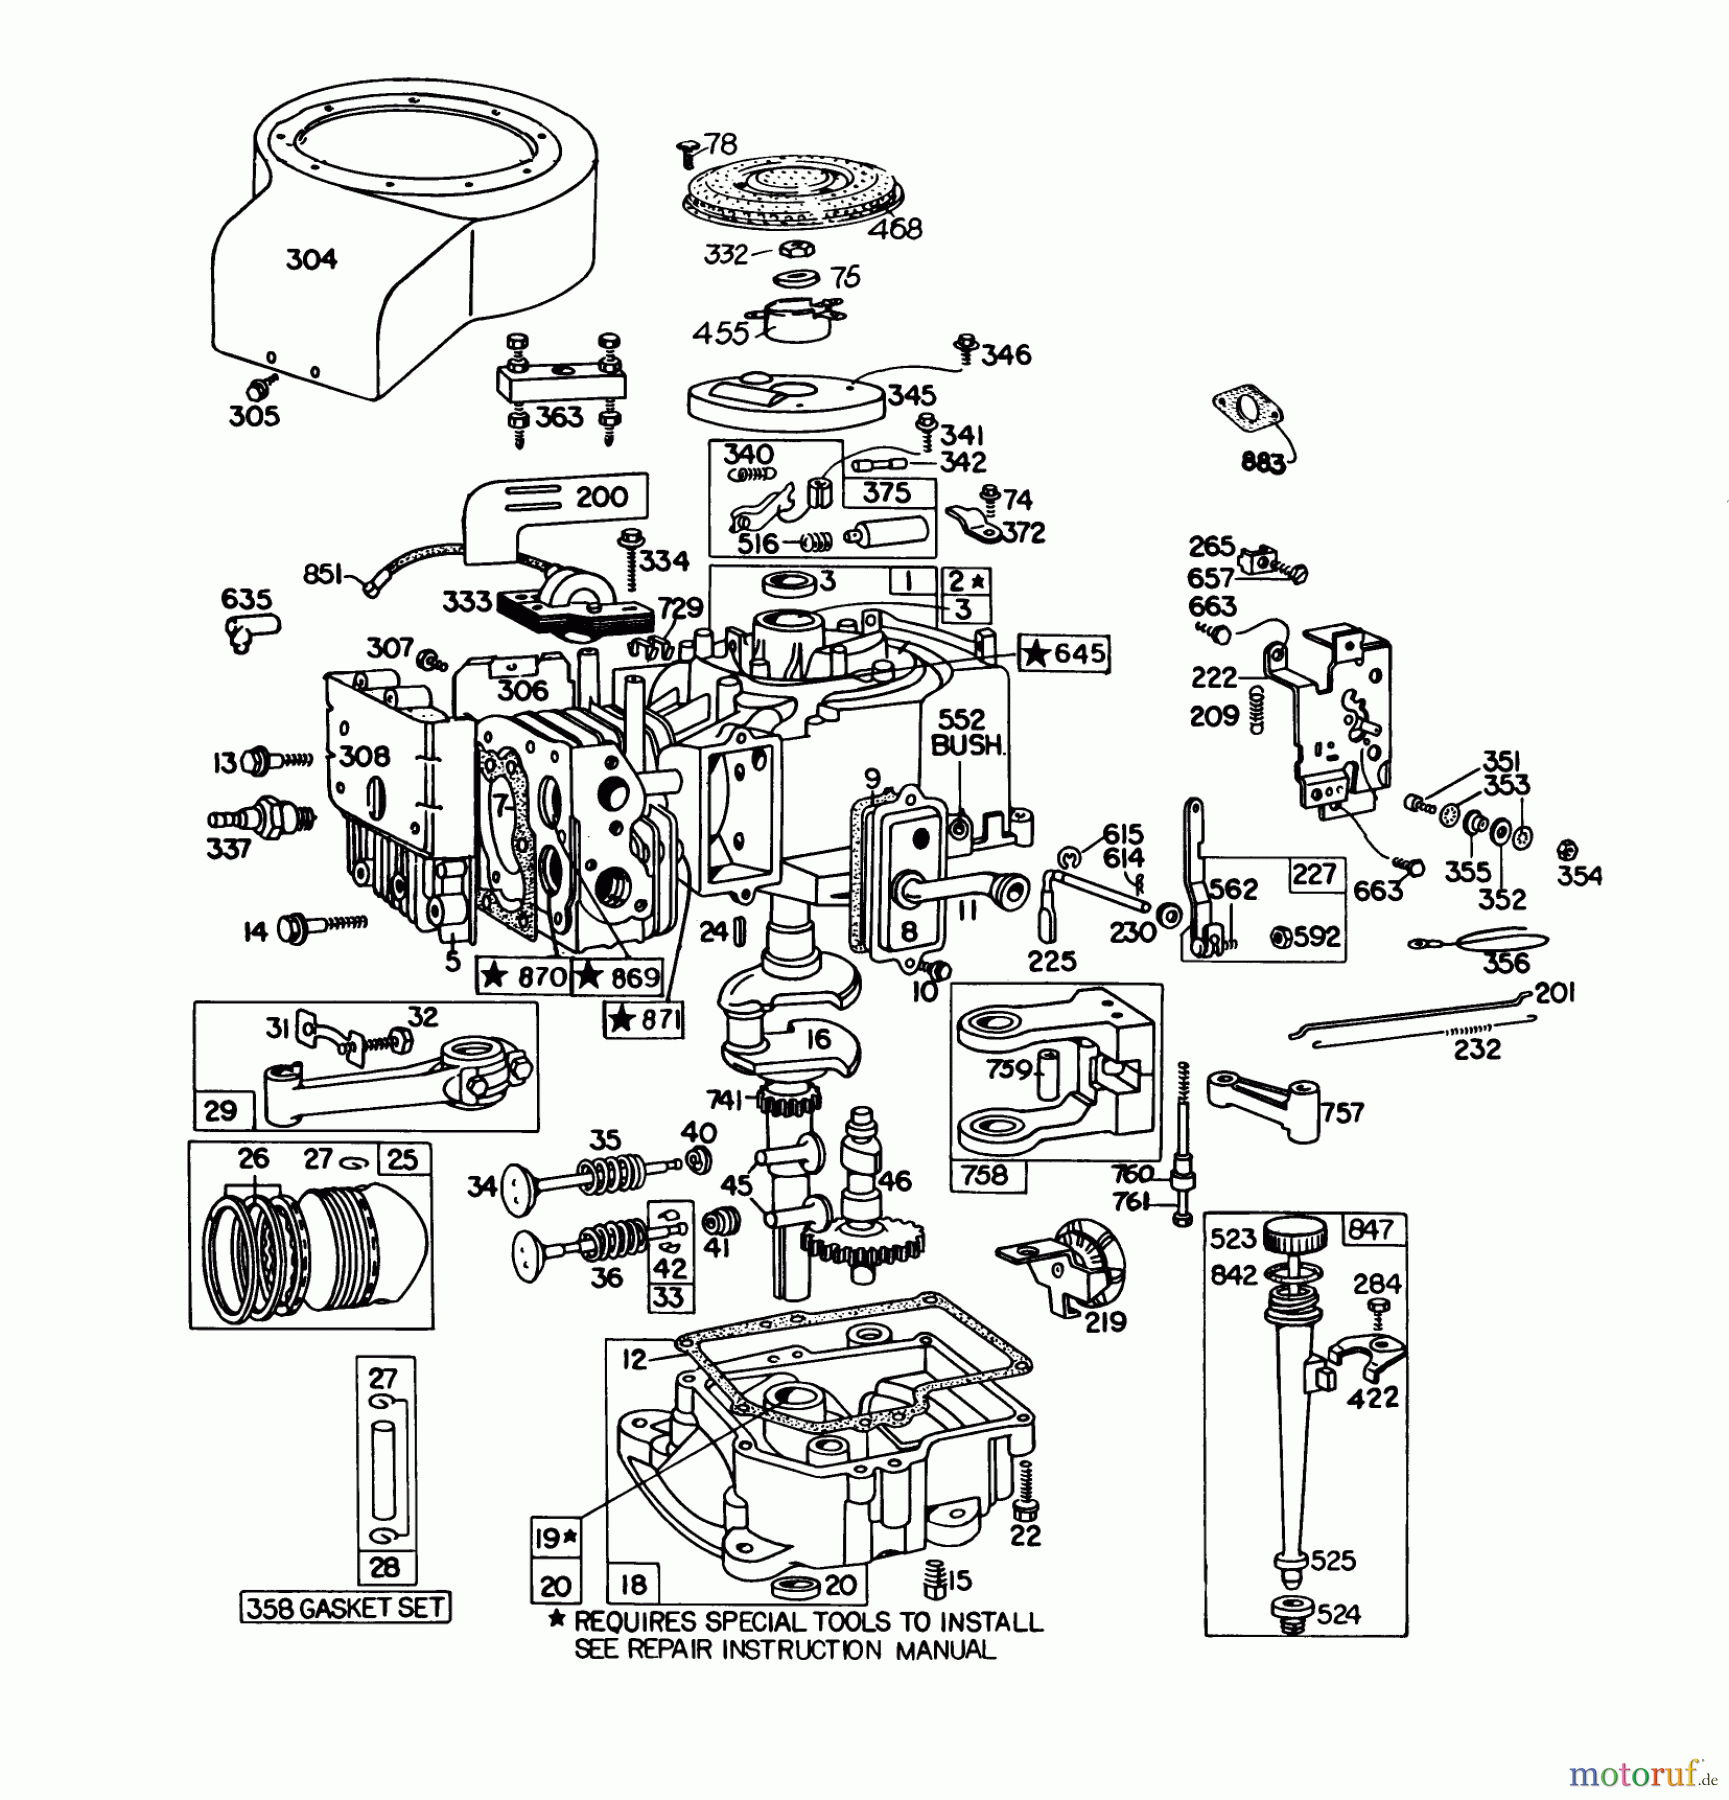  Toro Neu Mowers, Lawn & Garden Tractor Seite 1 57360 (11-32) - Toro 11-32 Lawn Tractor, 1980 (0000001-0999999) ENGINE BRIGGS & STRATTON MODEL 191707-5641-01 (MODEL 57300)